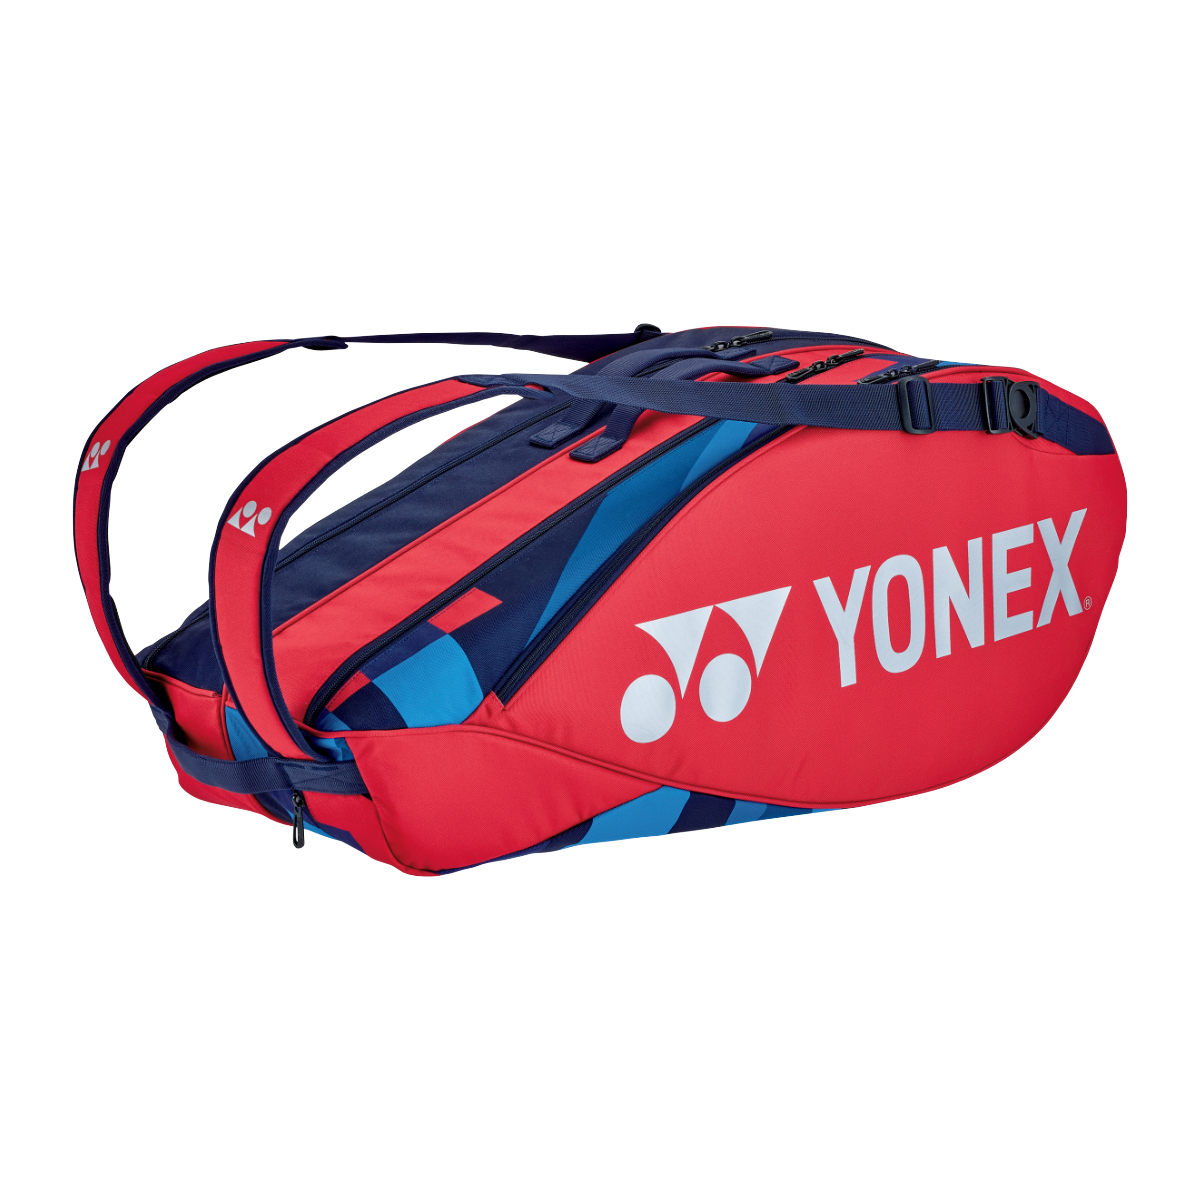 Yonex 6R Pro Serie Racketbag Tennistasche tango/red